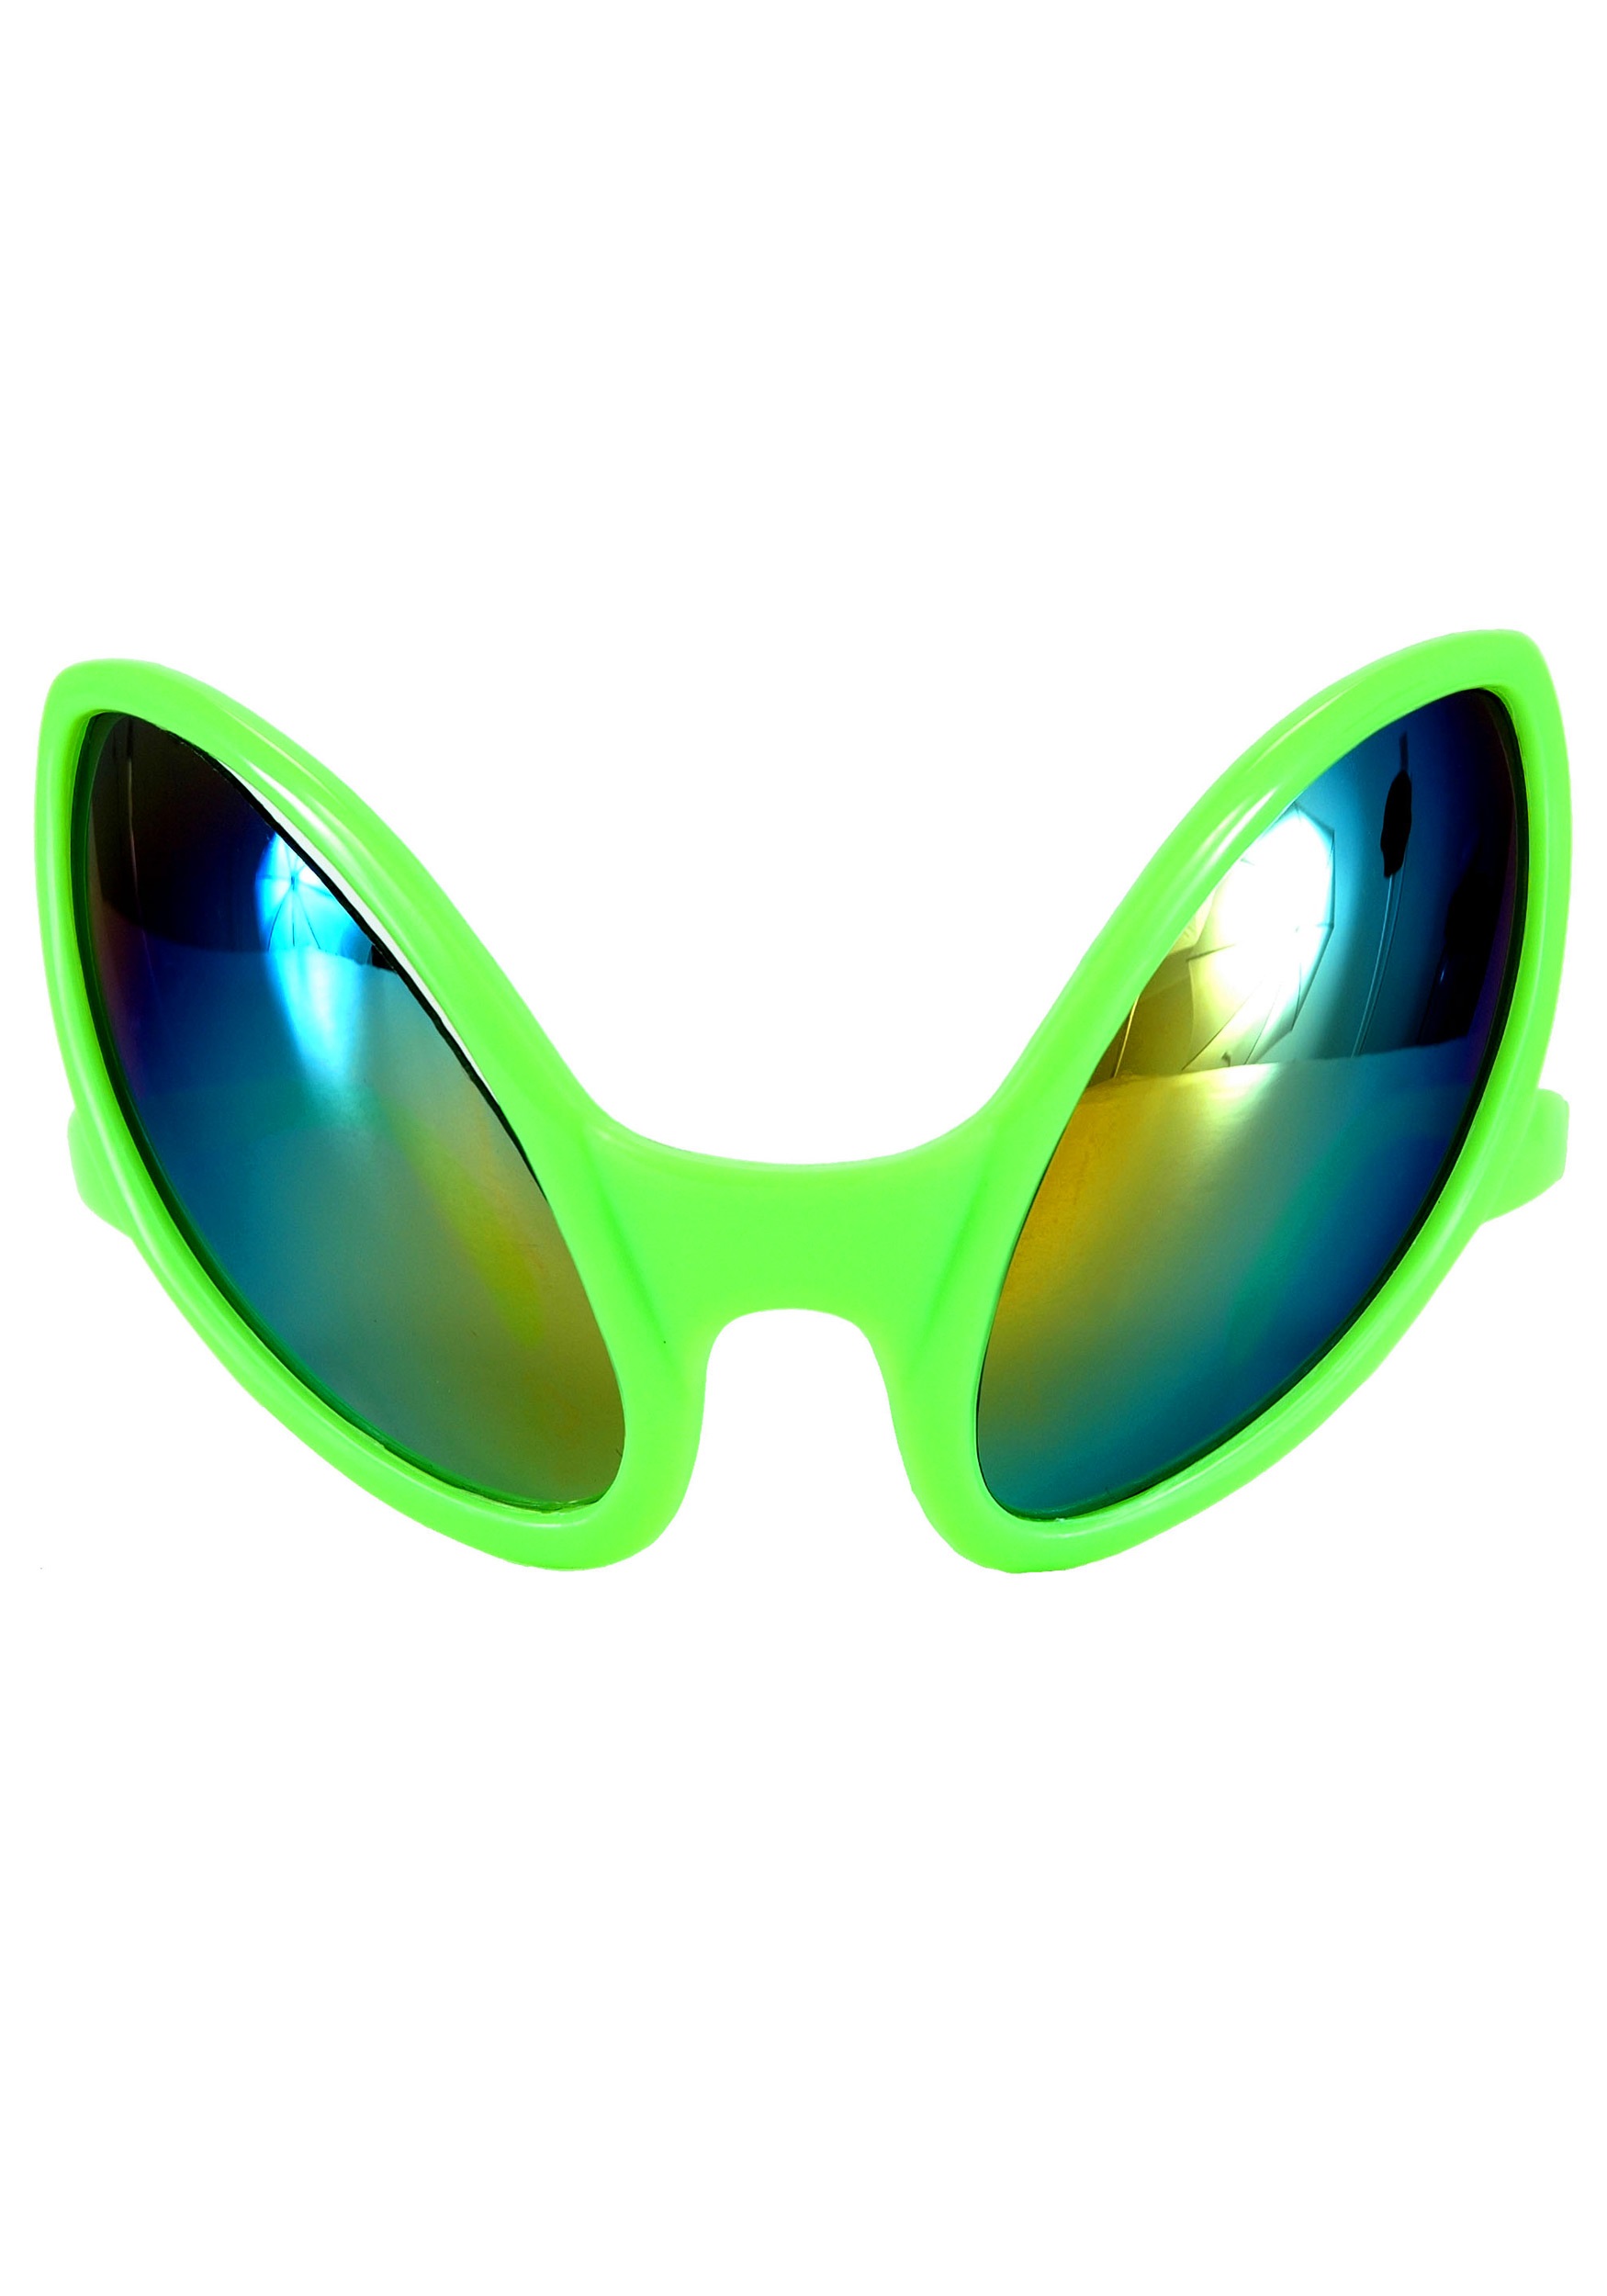 Alien Sunglasses Novelty Alien Eye Shaped Green 1 Pair 